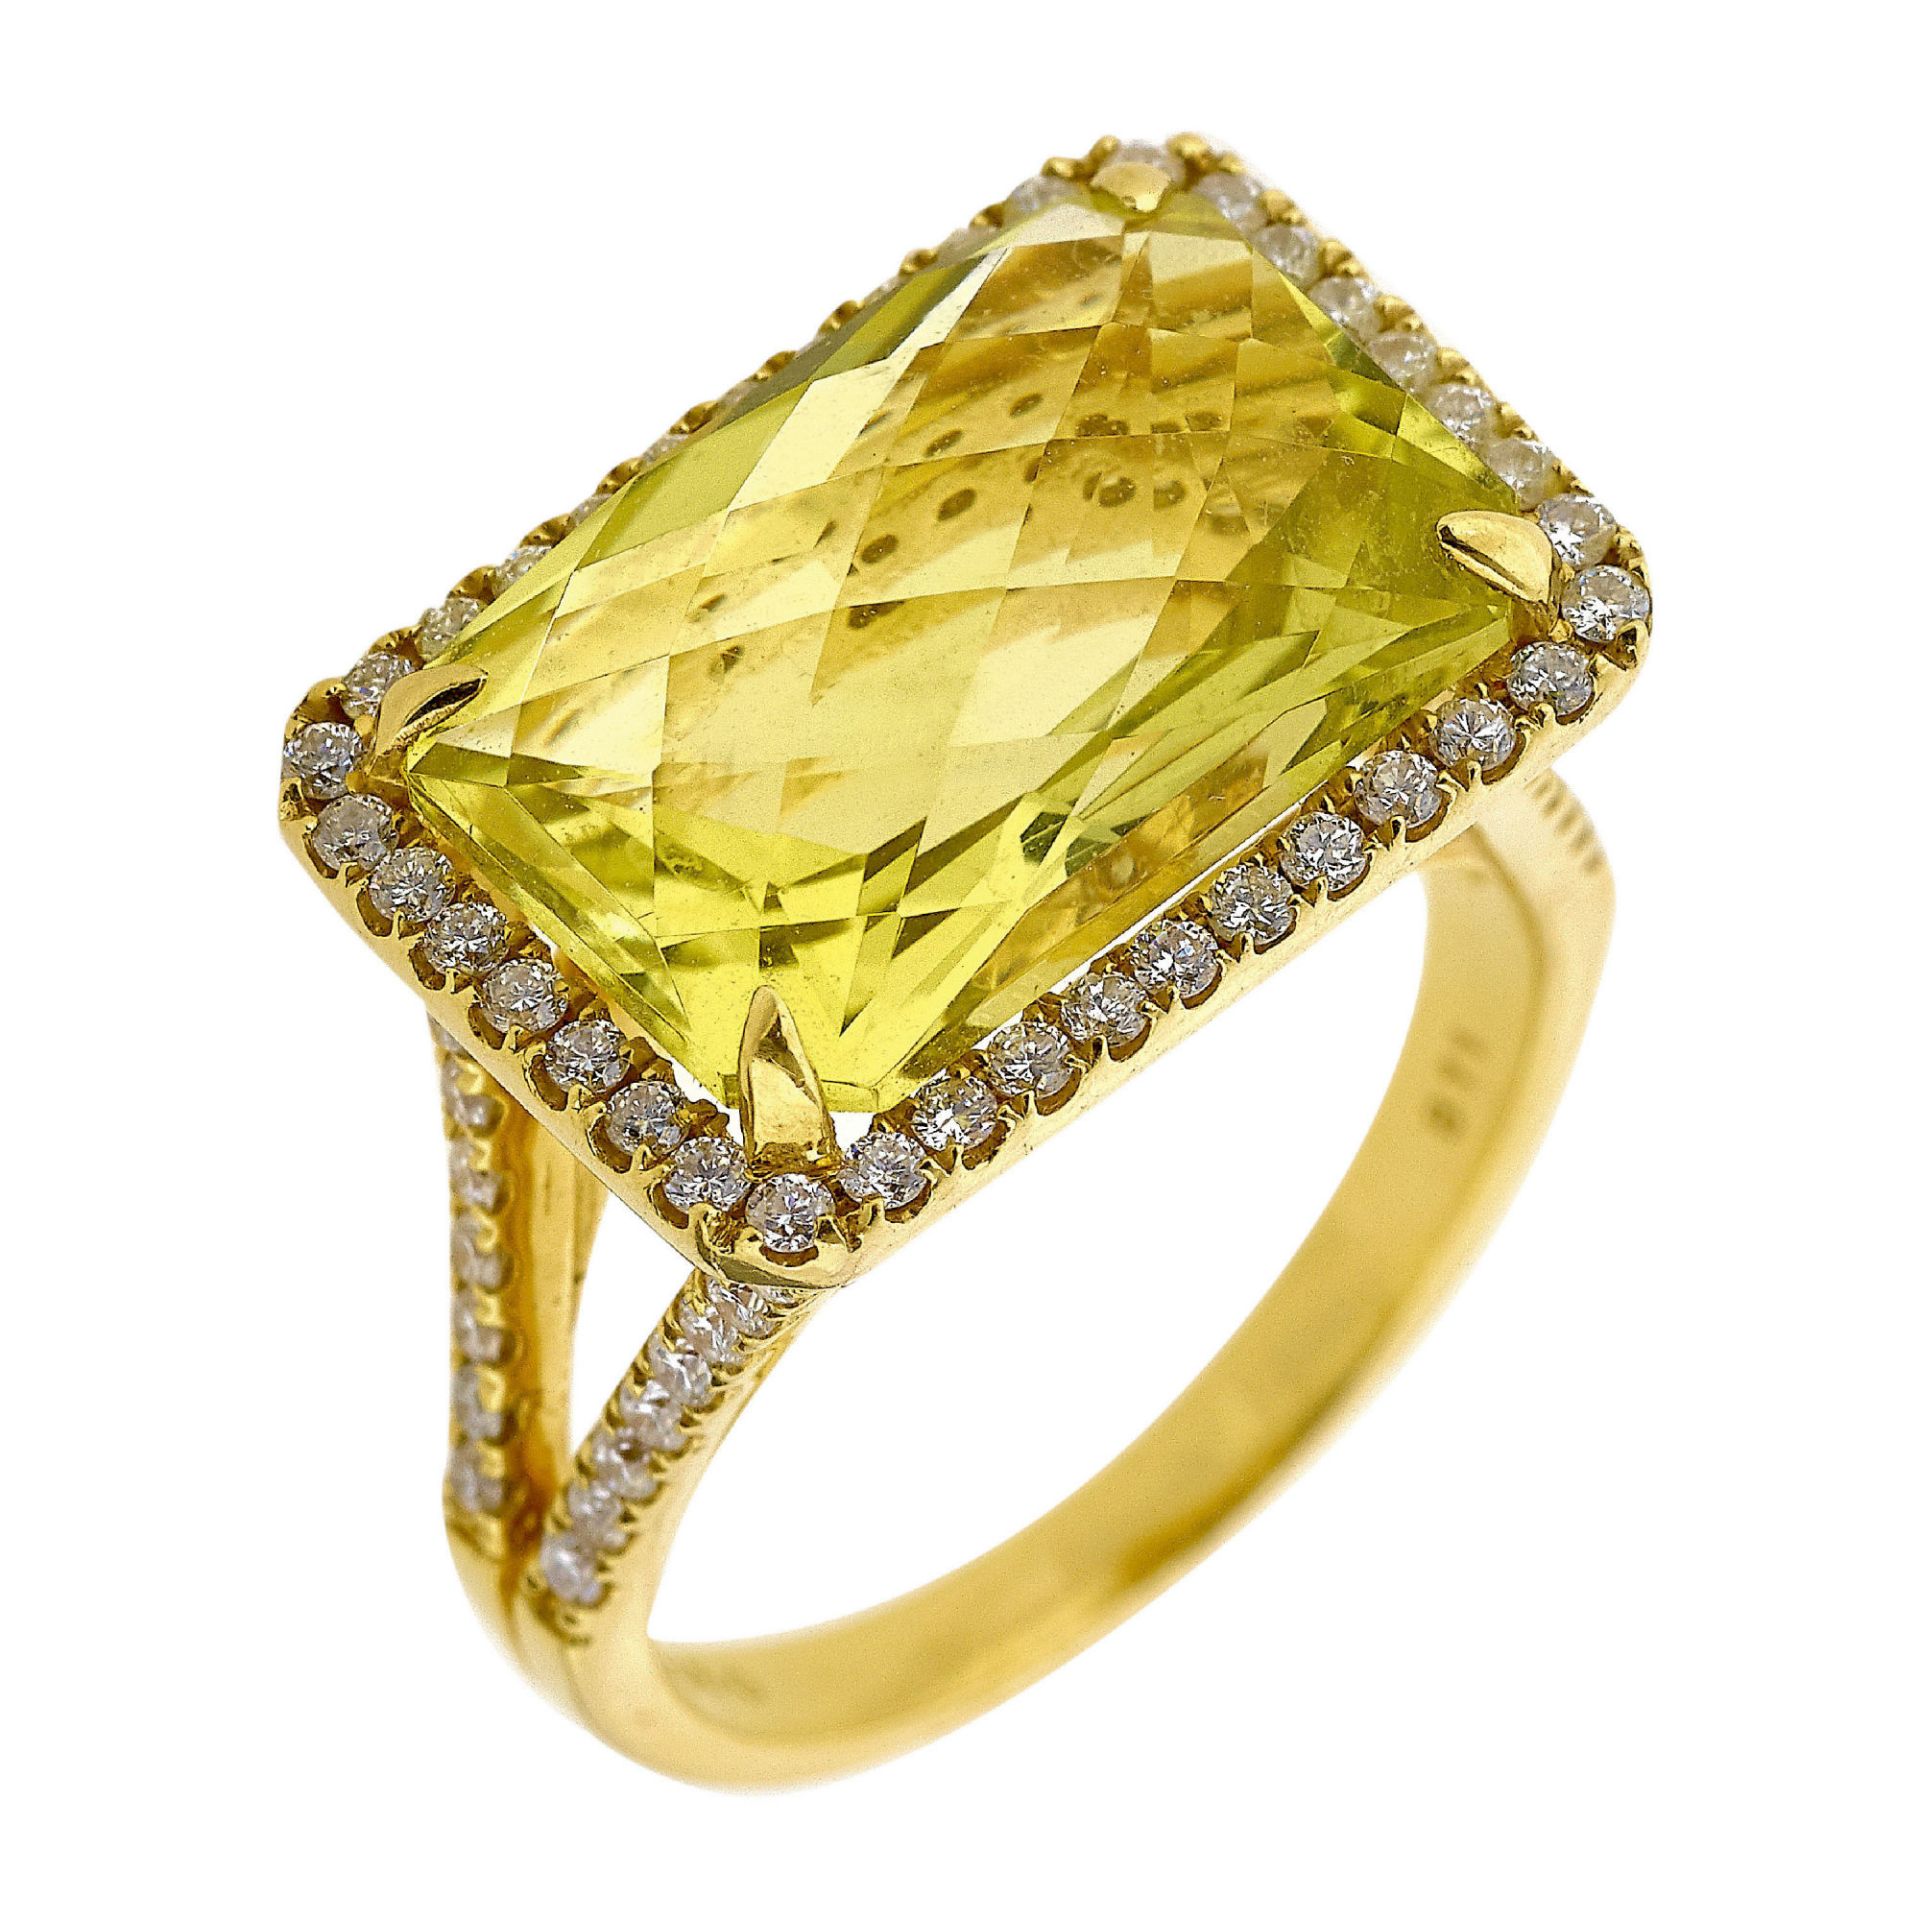 LEMONQUARZ-BRILLANT-RING / Lemon quartz-diamond ring